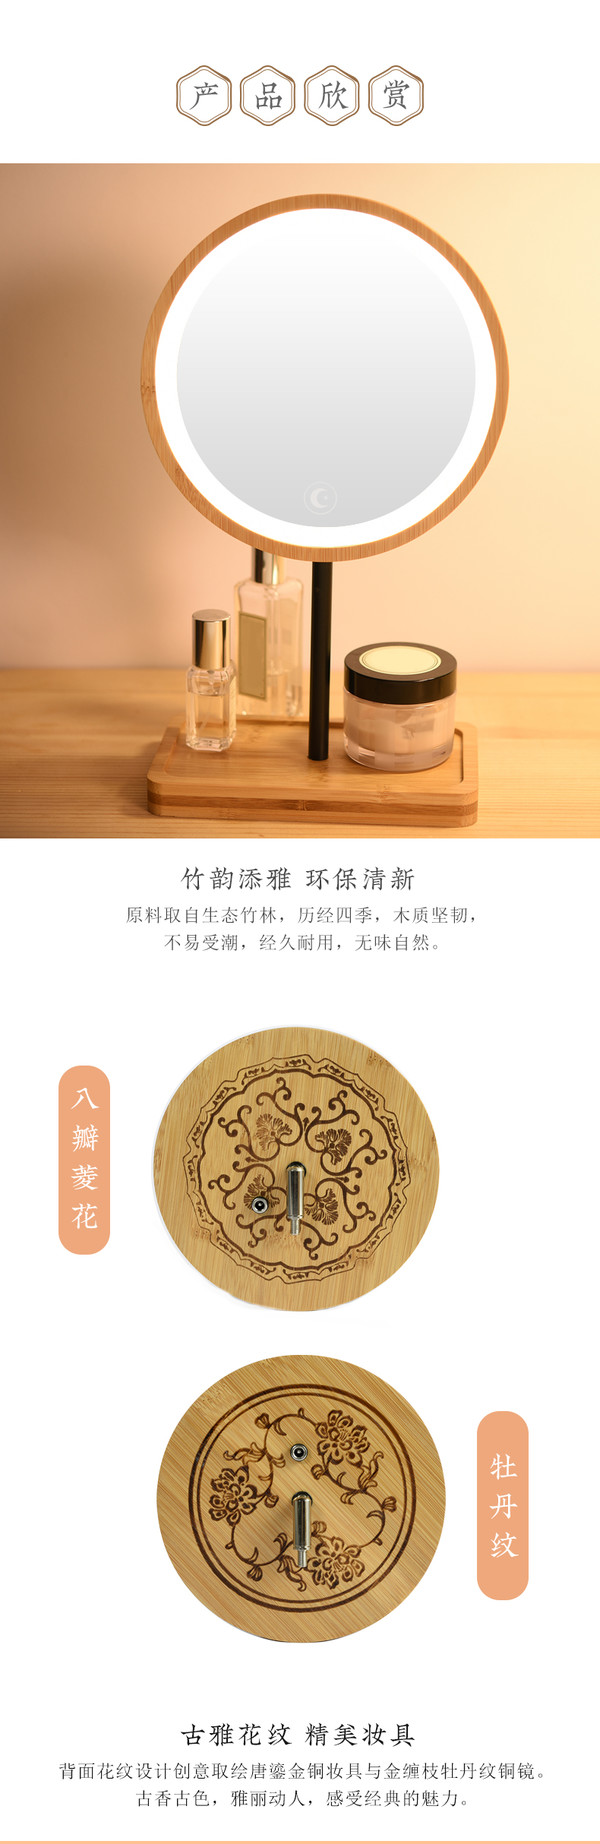 中国国家博物馆 LED三色化妆镜 牡丹纹 16x9x17cm 木质中国风卧室镜子